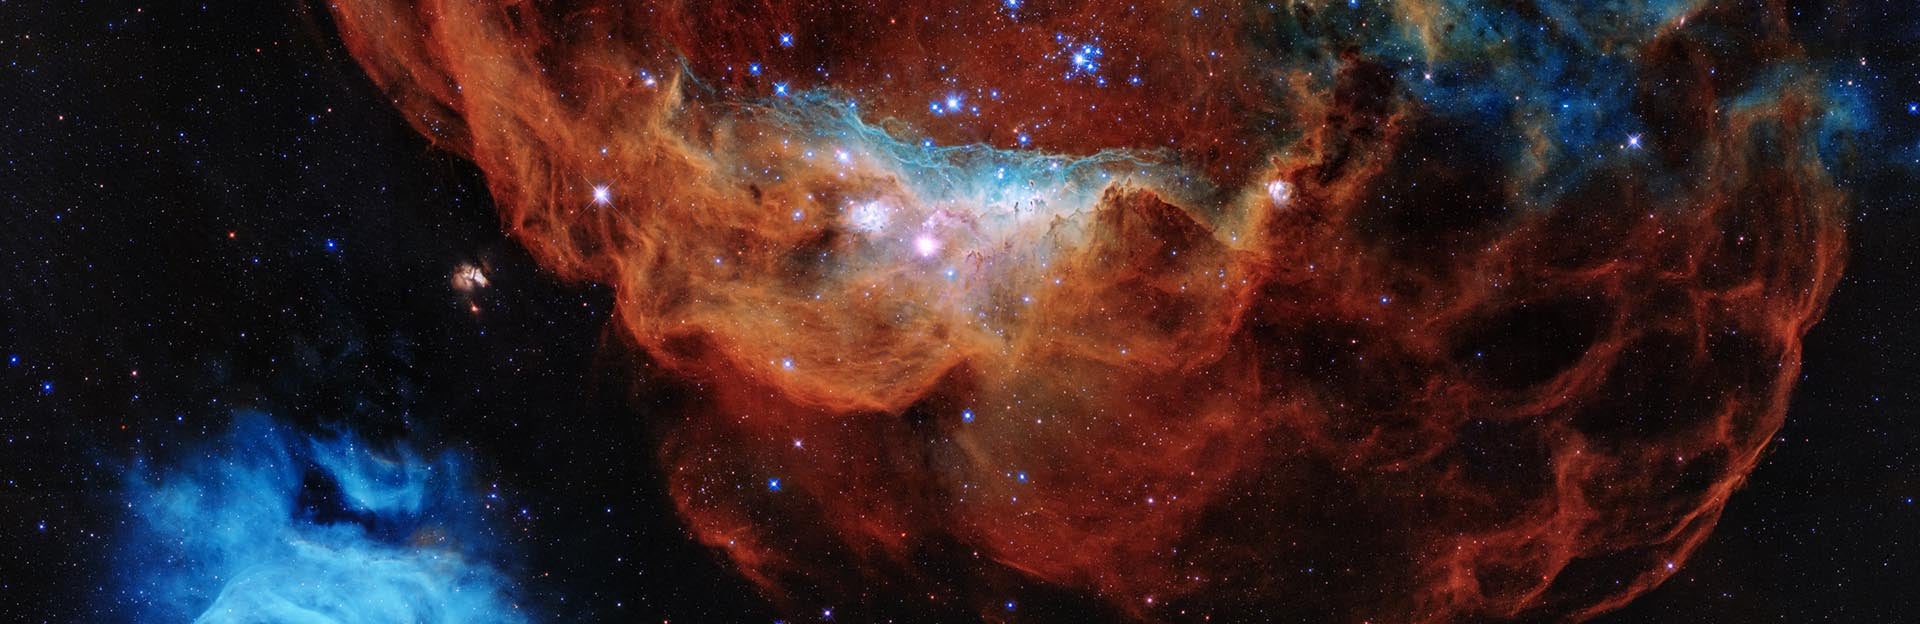 NGC 2014 and NGC 2020 (c) NASA